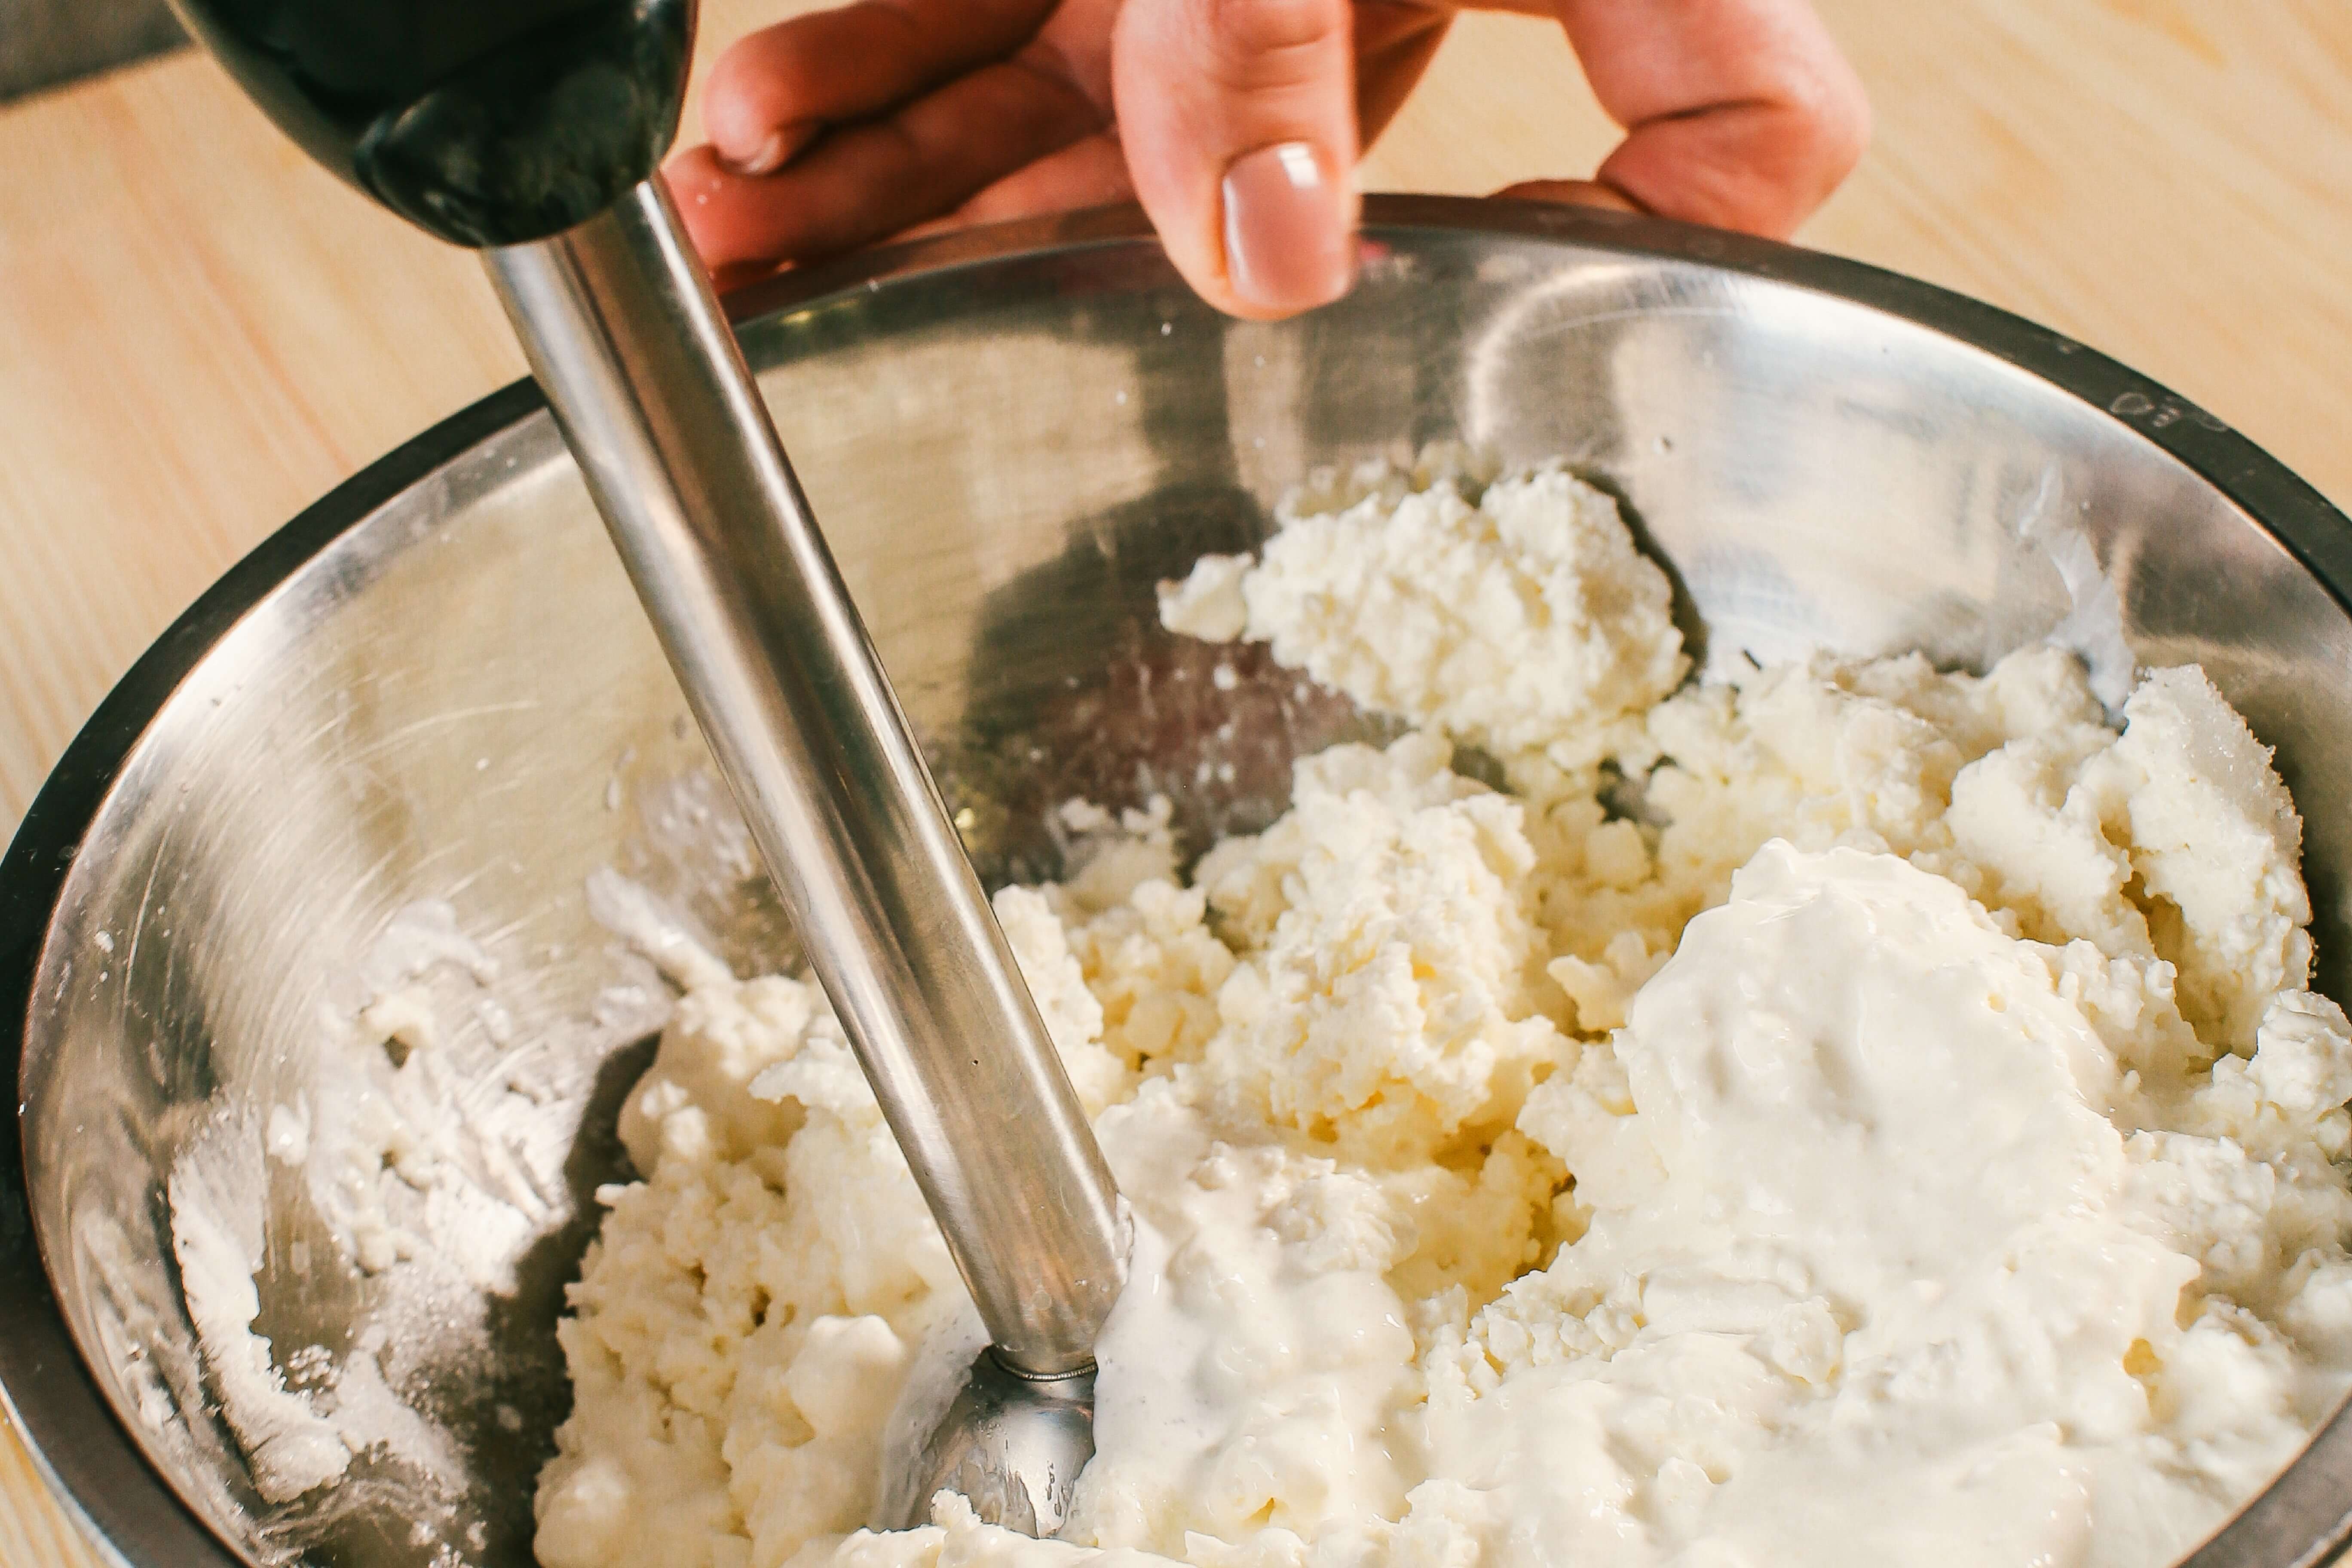  Сир та 50 мл вершків збити блендером максимально досягаючи однорідності. Цукор та воду треба закипятити  в сотейнику, і довести до температури 117°C. Коли сироп матиме температуру 90 °C, починайте міксером збивати яйця. Тоненькою цівкою вливаємо наш сироп в яйця - це називається «пат а бомб». Міксер вимикаємо, коли маса буде білою та стійкою. Холодні вершки (200 мл) збити з ваніллю до стійких піків. Всі три складові - сир, пат а бомб, вершки змішати дуже делікатно за допомогою вінчика та силіконової лопатки. Додати цедру.